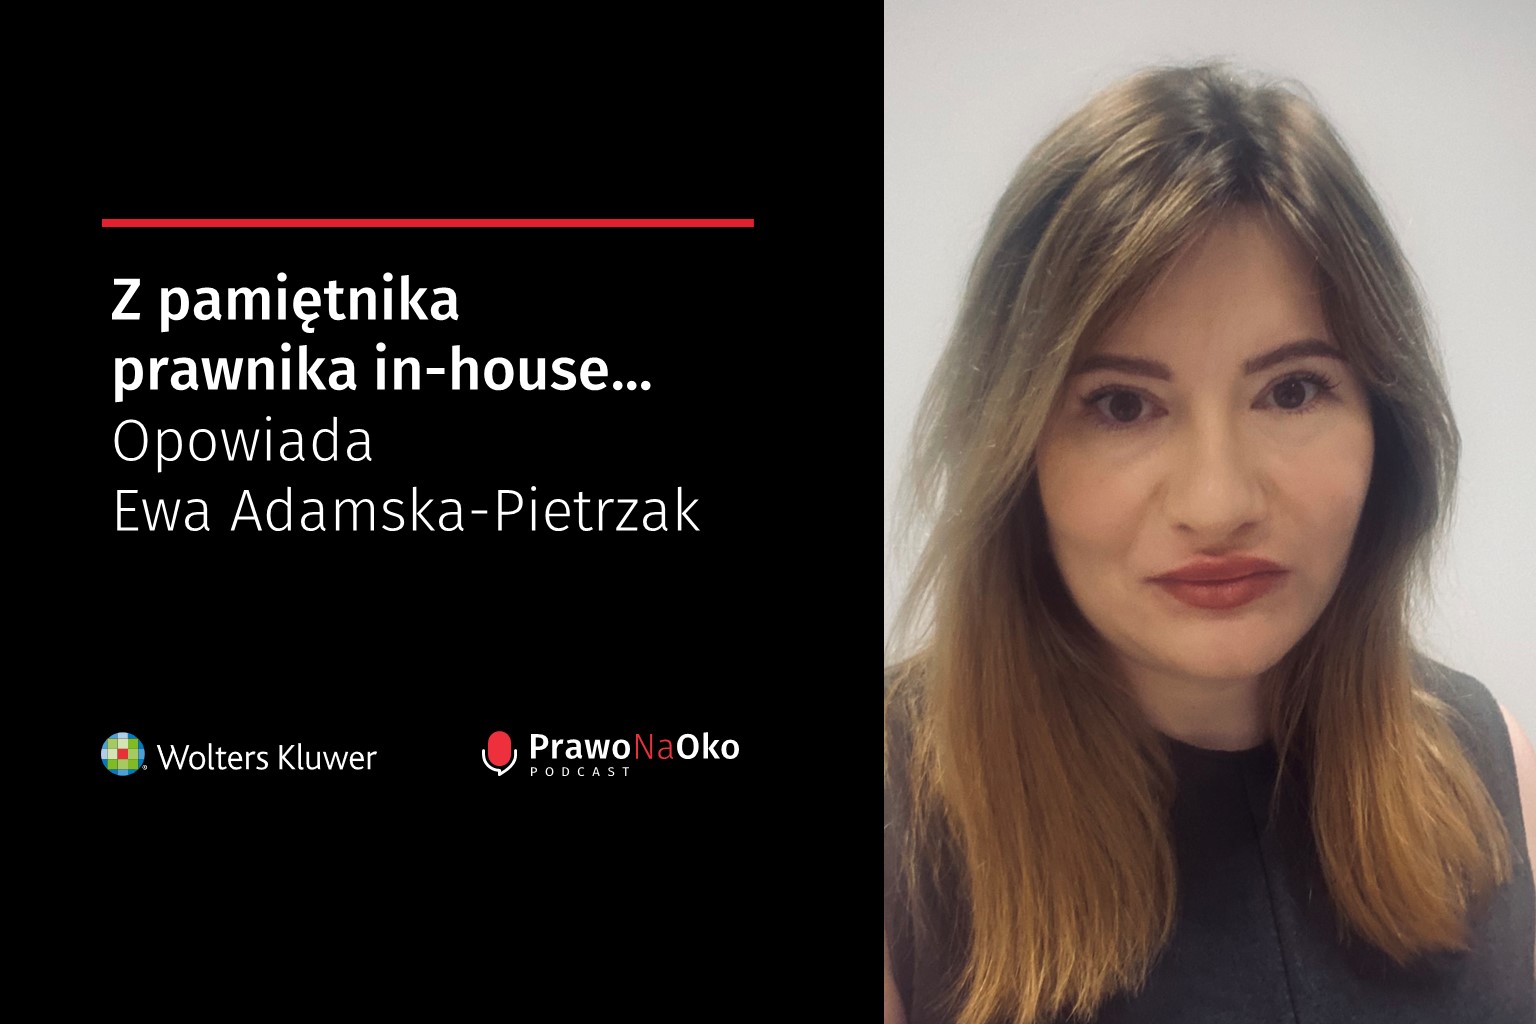 PODCAST #12: Z pamiętnika prawnika in-house – opowiada Ewa Adamska-Pietrzak